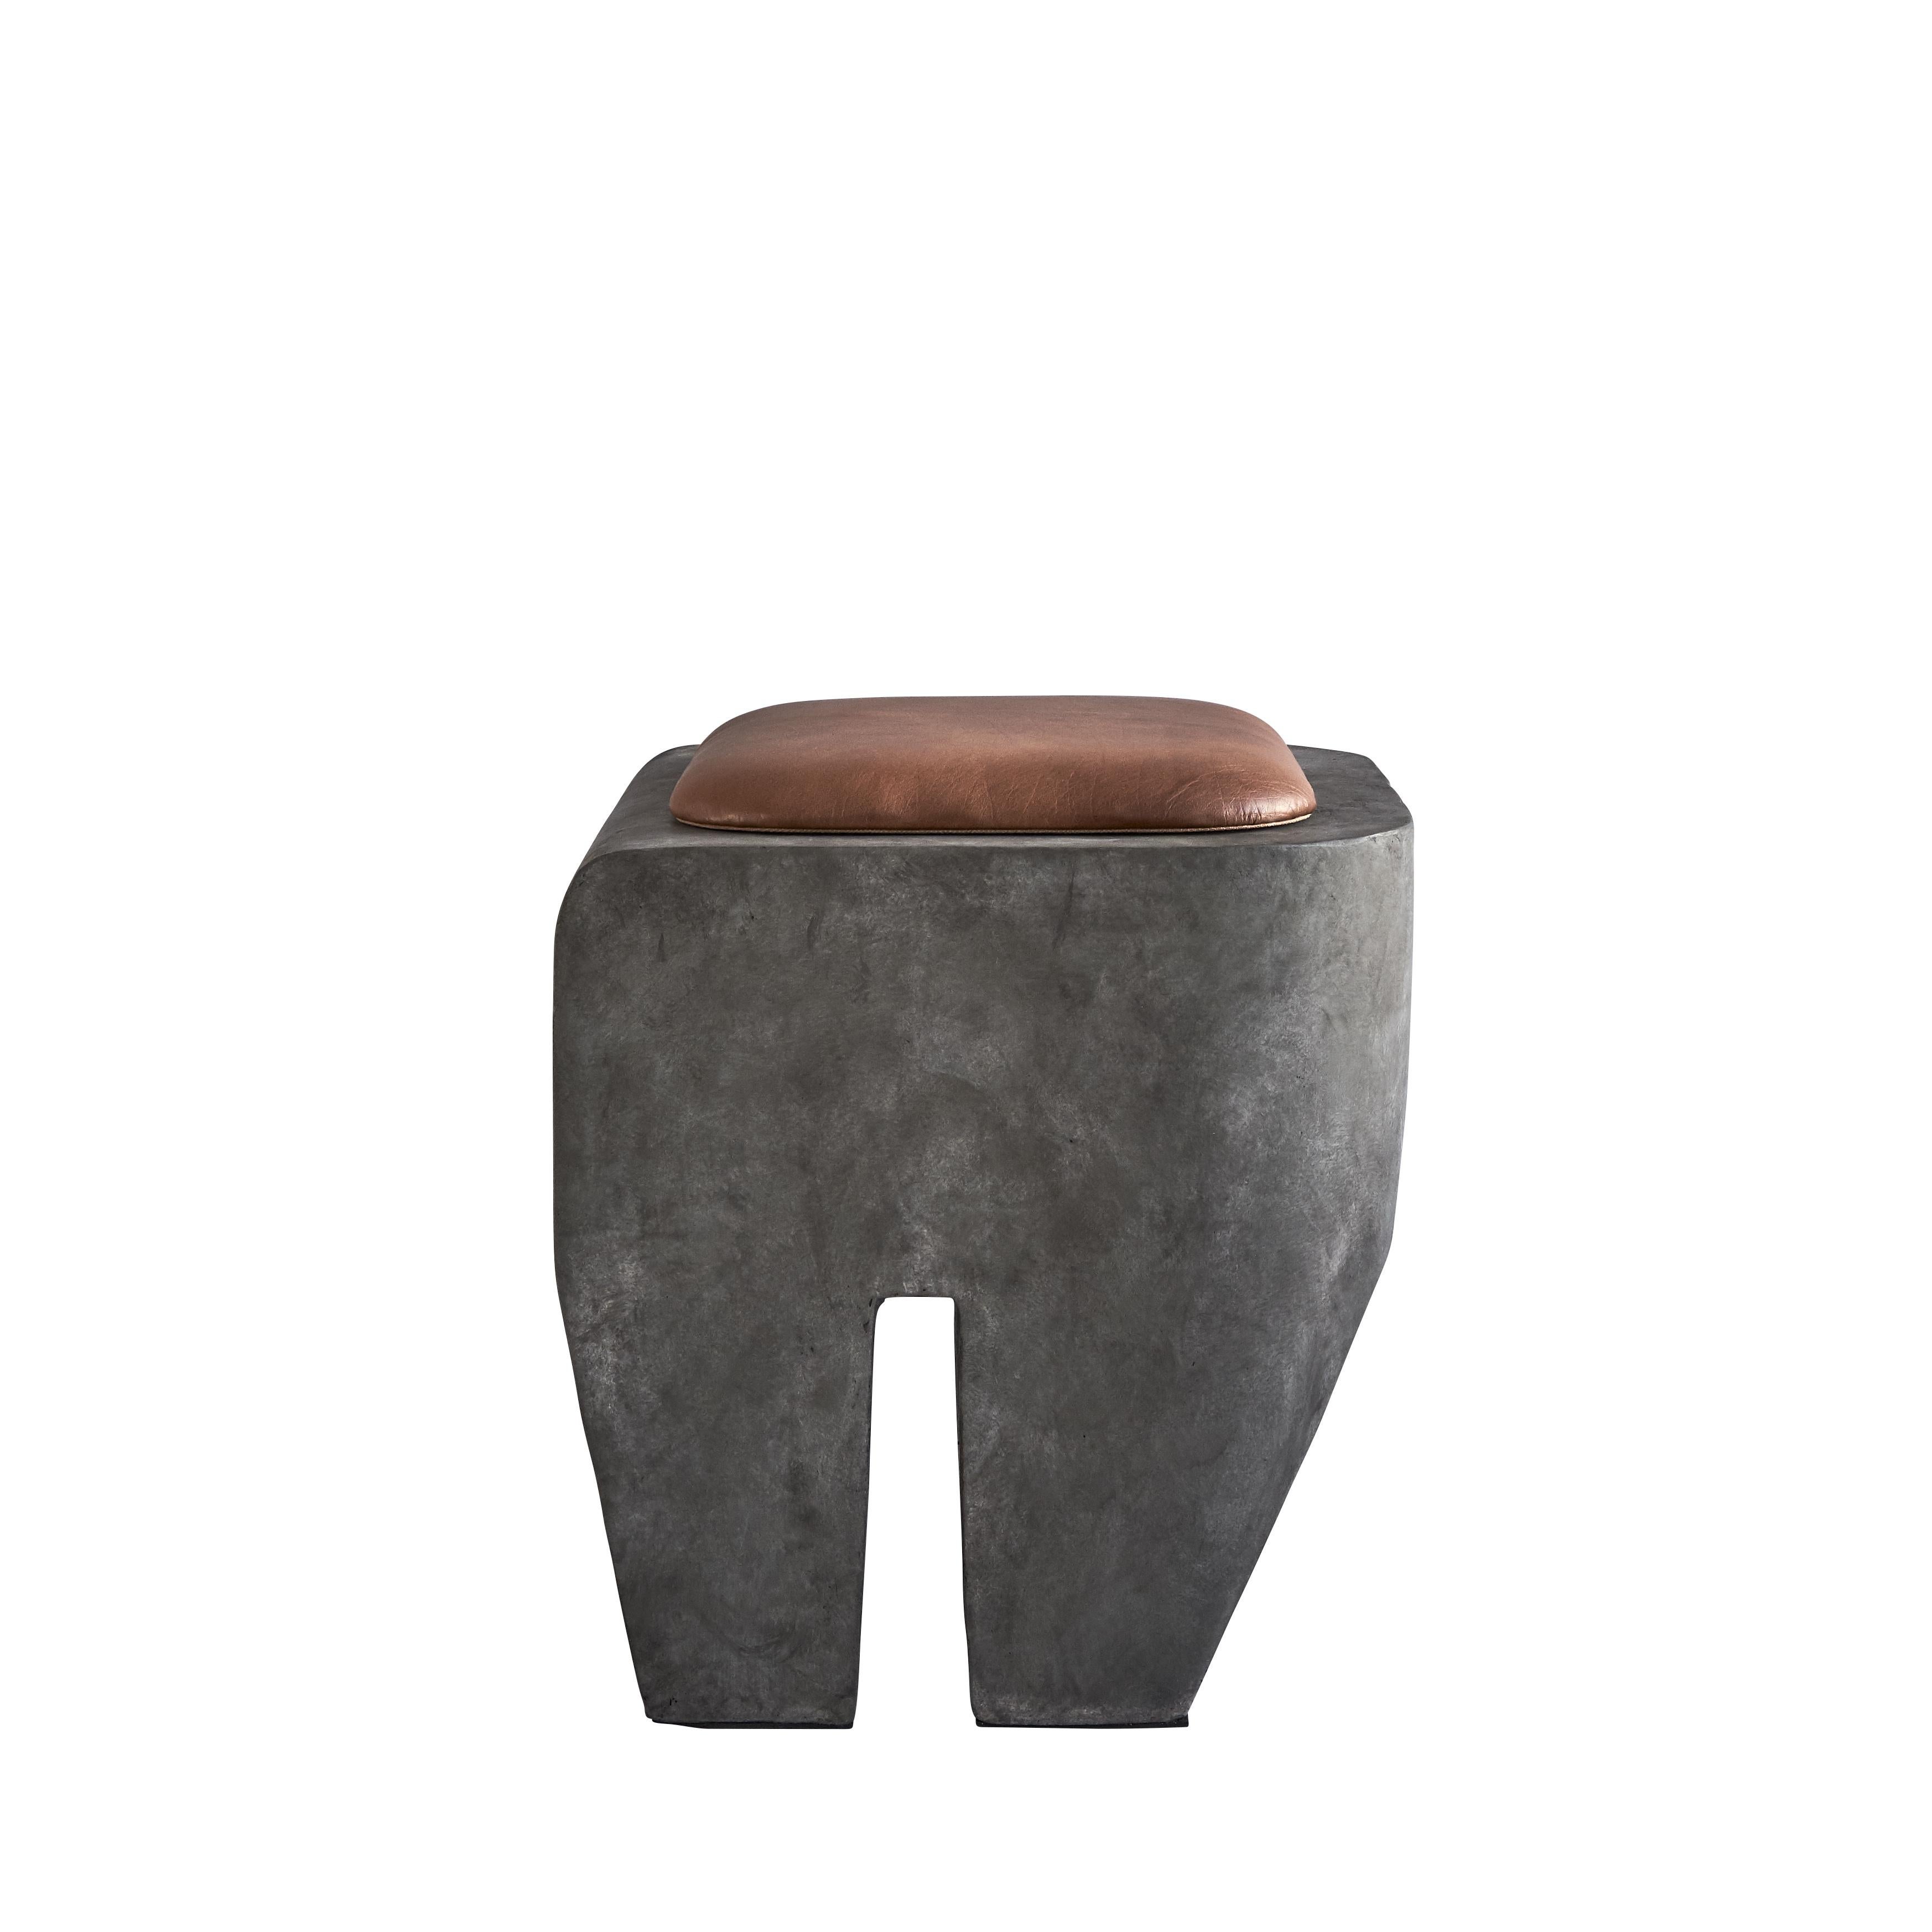 Sculpt Stool + Cushion by 101 Copenhagen
Designed by Kristian Sofus Hansen & Tommy Hyldahl
Dimensions: L45 / W45 /H45 CM
Materials: Fiber Concrete; Cushion: leather.

The design of the Sculpt stool is inspired by the Brutalist architecture that